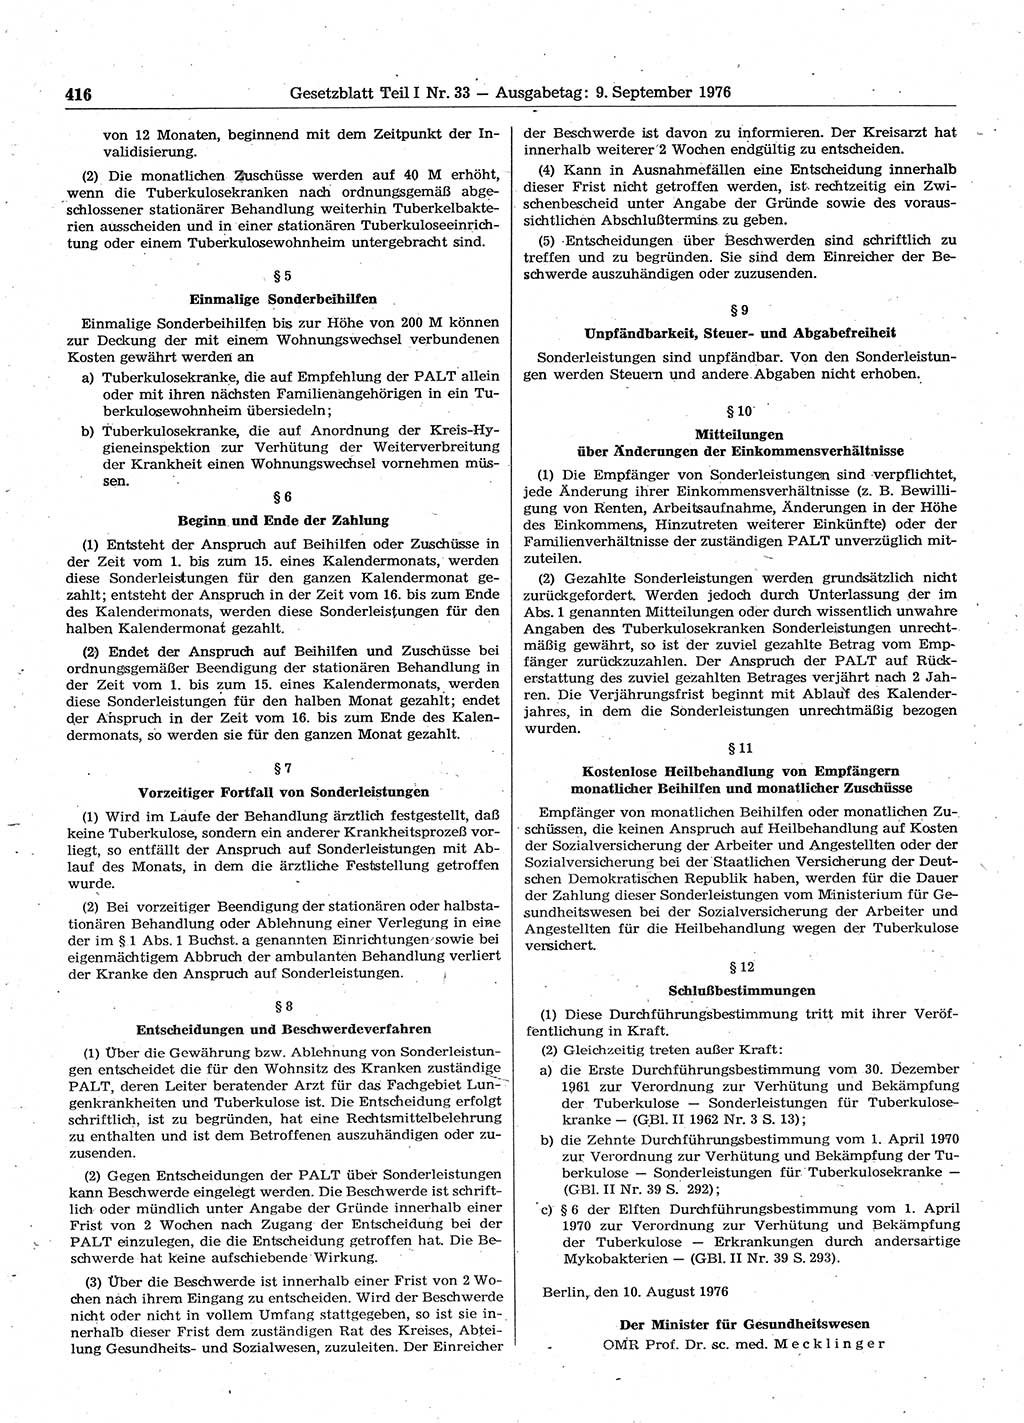 Gesetzblatt (GBl.) der Deutschen Demokratischen Republik (DDR) Teil Ⅰ 1976, Seite 416 (GBl. DDR Ⅰ 1976, S. 416)